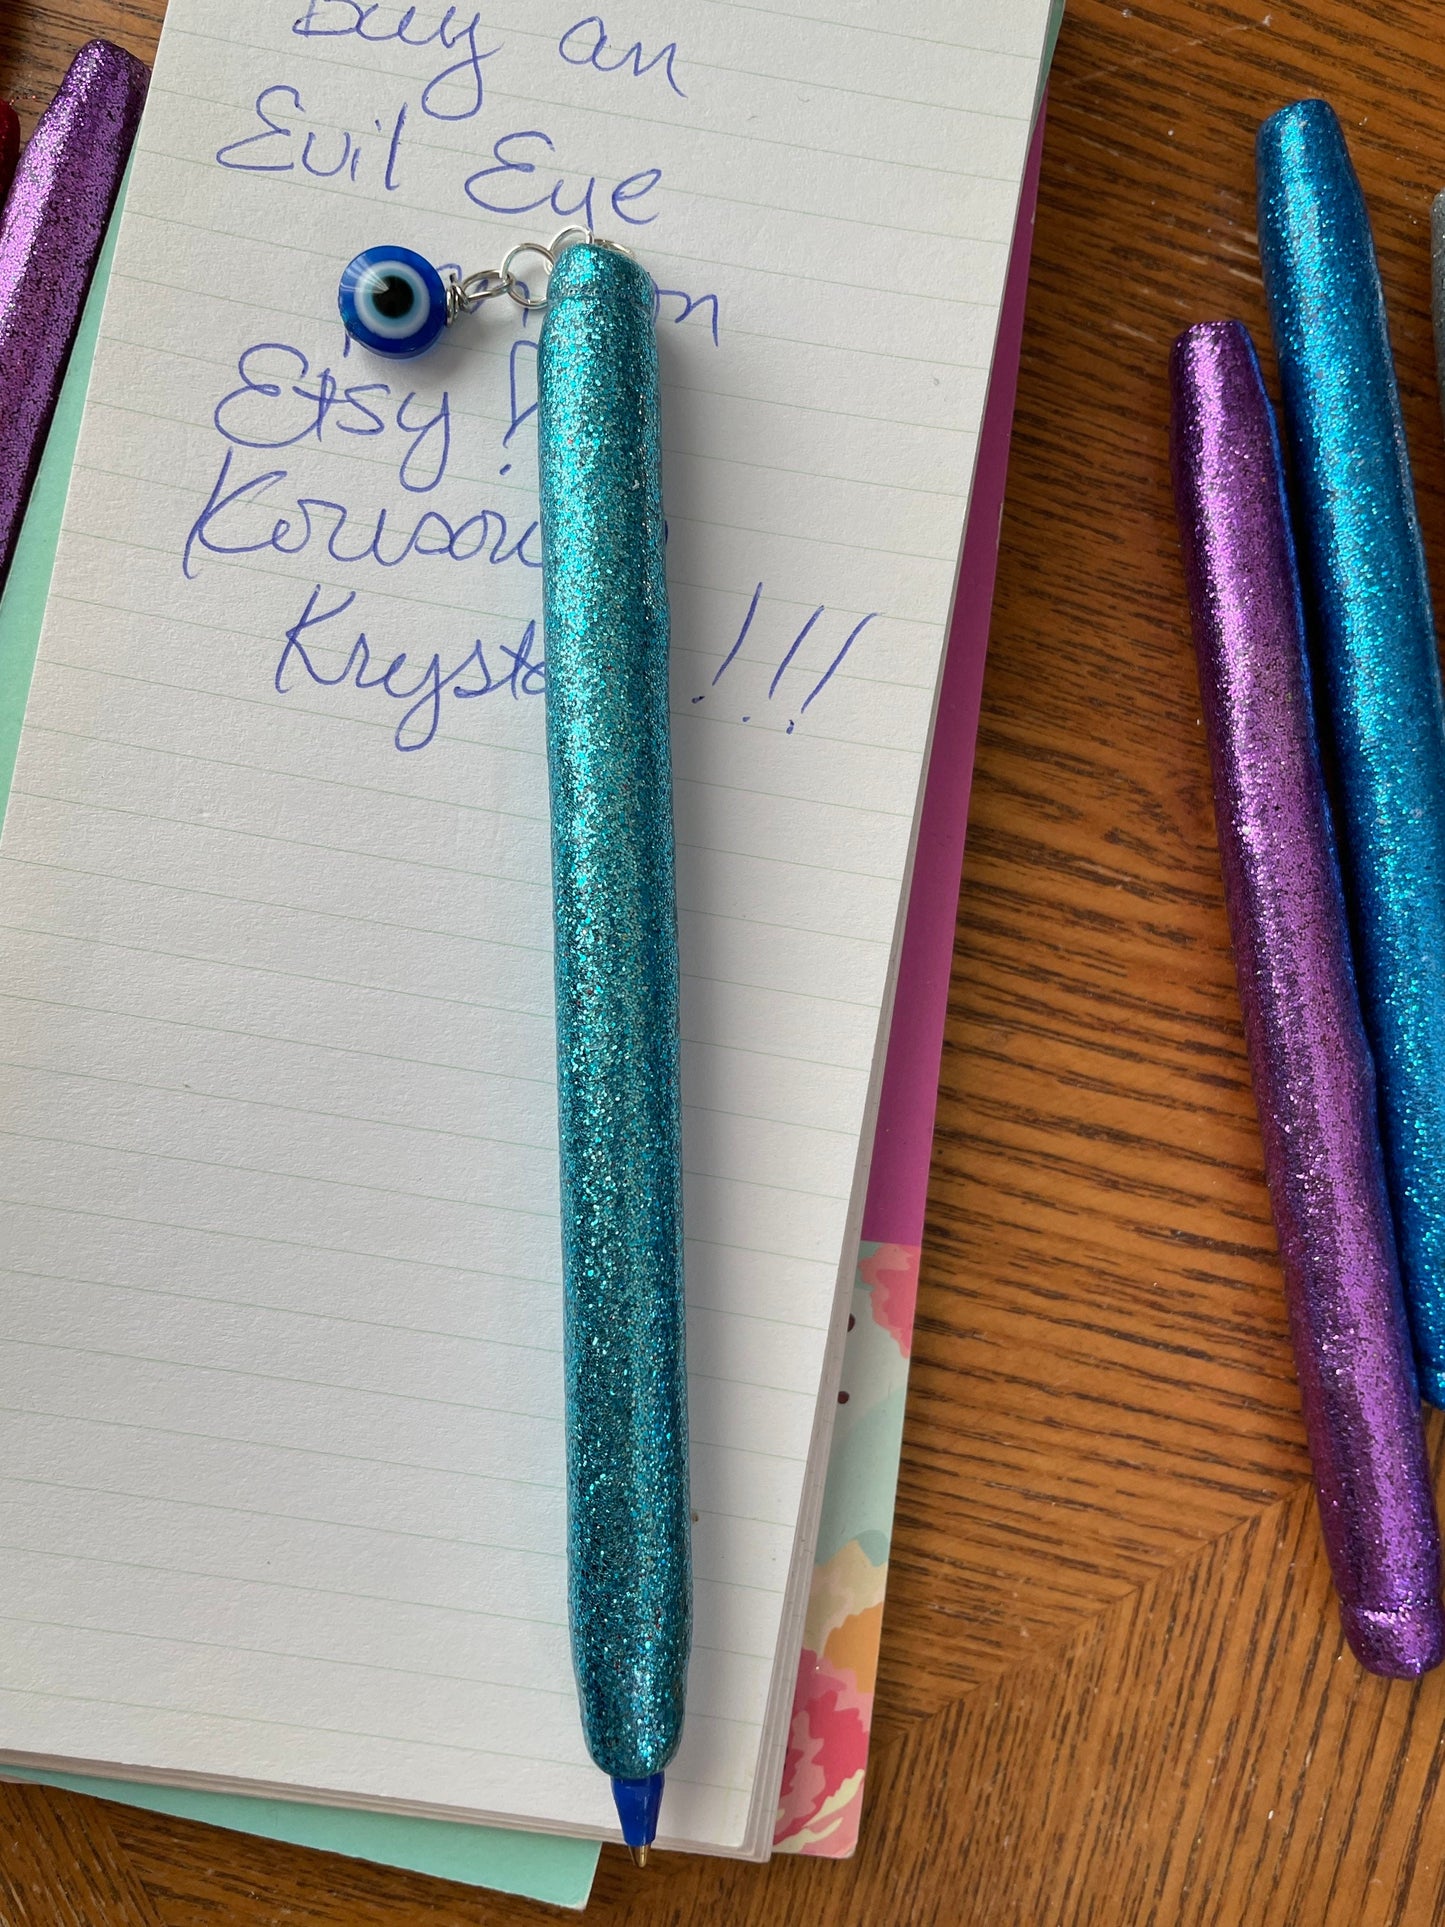 Evil Eye refillable glitter pens!